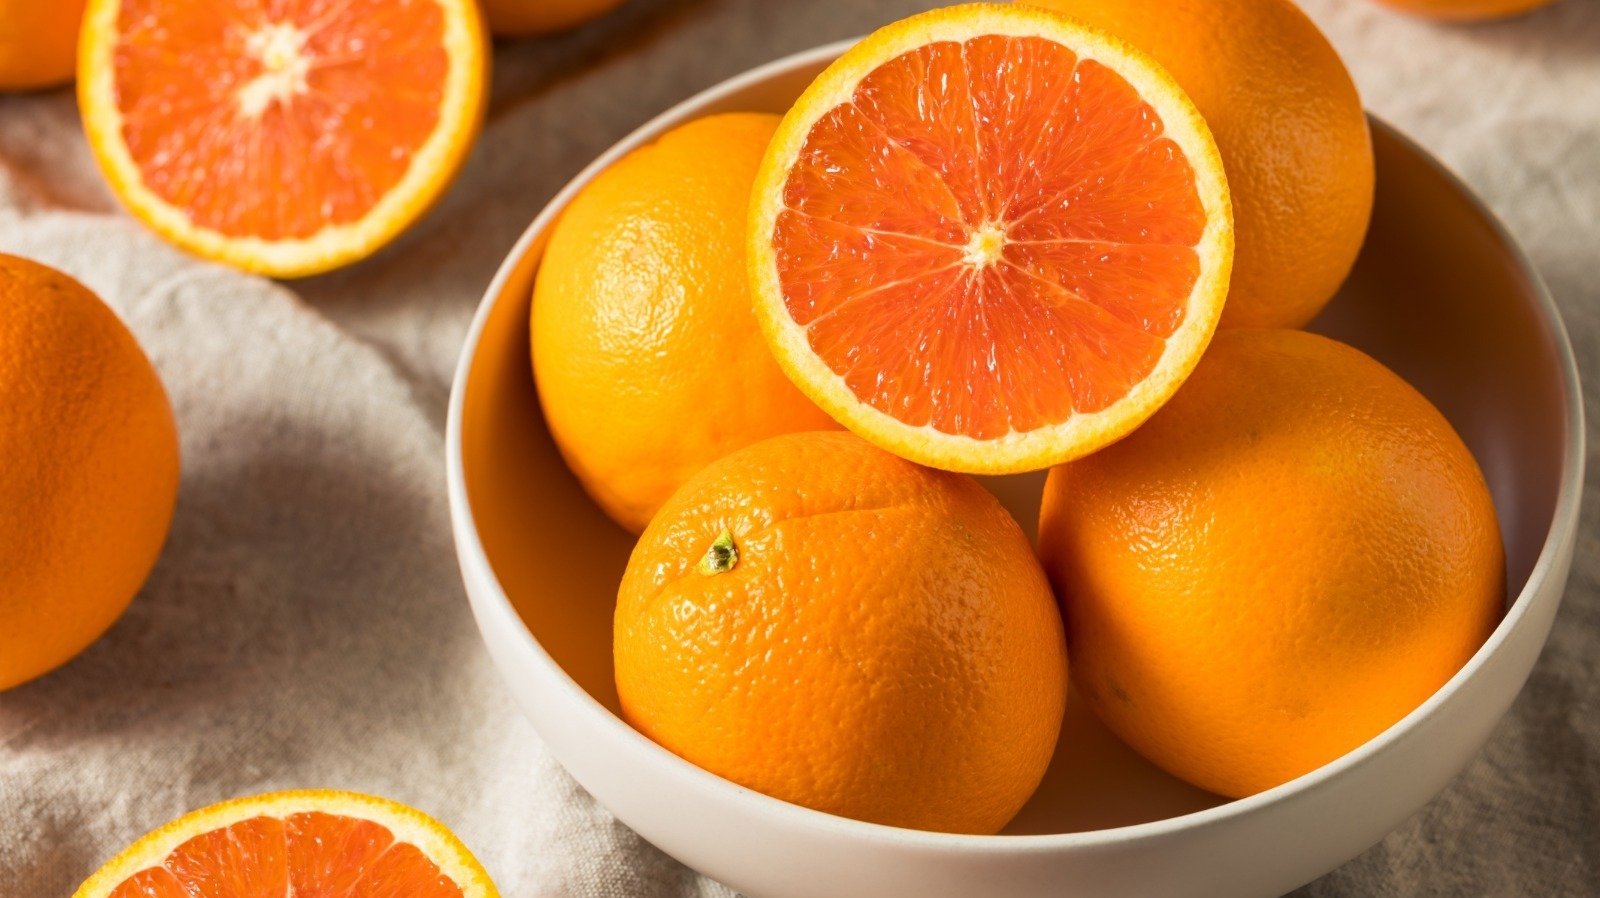 They like oranges. Сок кровавого апельсина. Апельсин navel Chocolate. Вагон с апельсинами. Картинки оранжевые апельсин дыня морковь на столе.